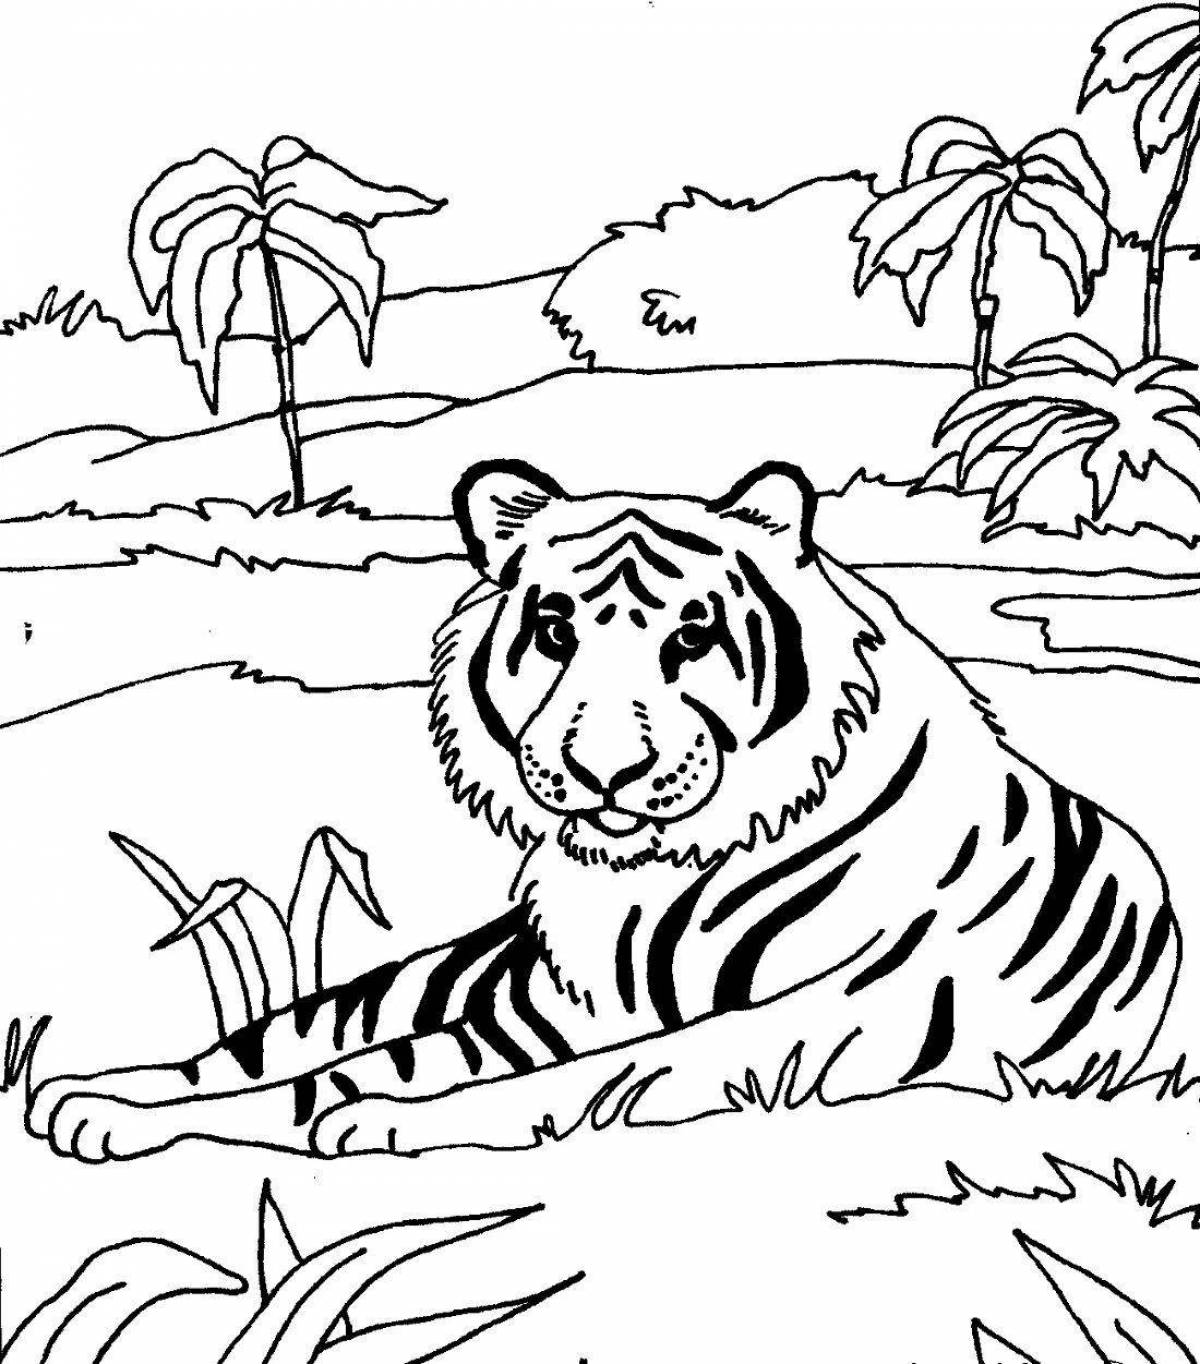 Intriguing Amur tiger coloring book